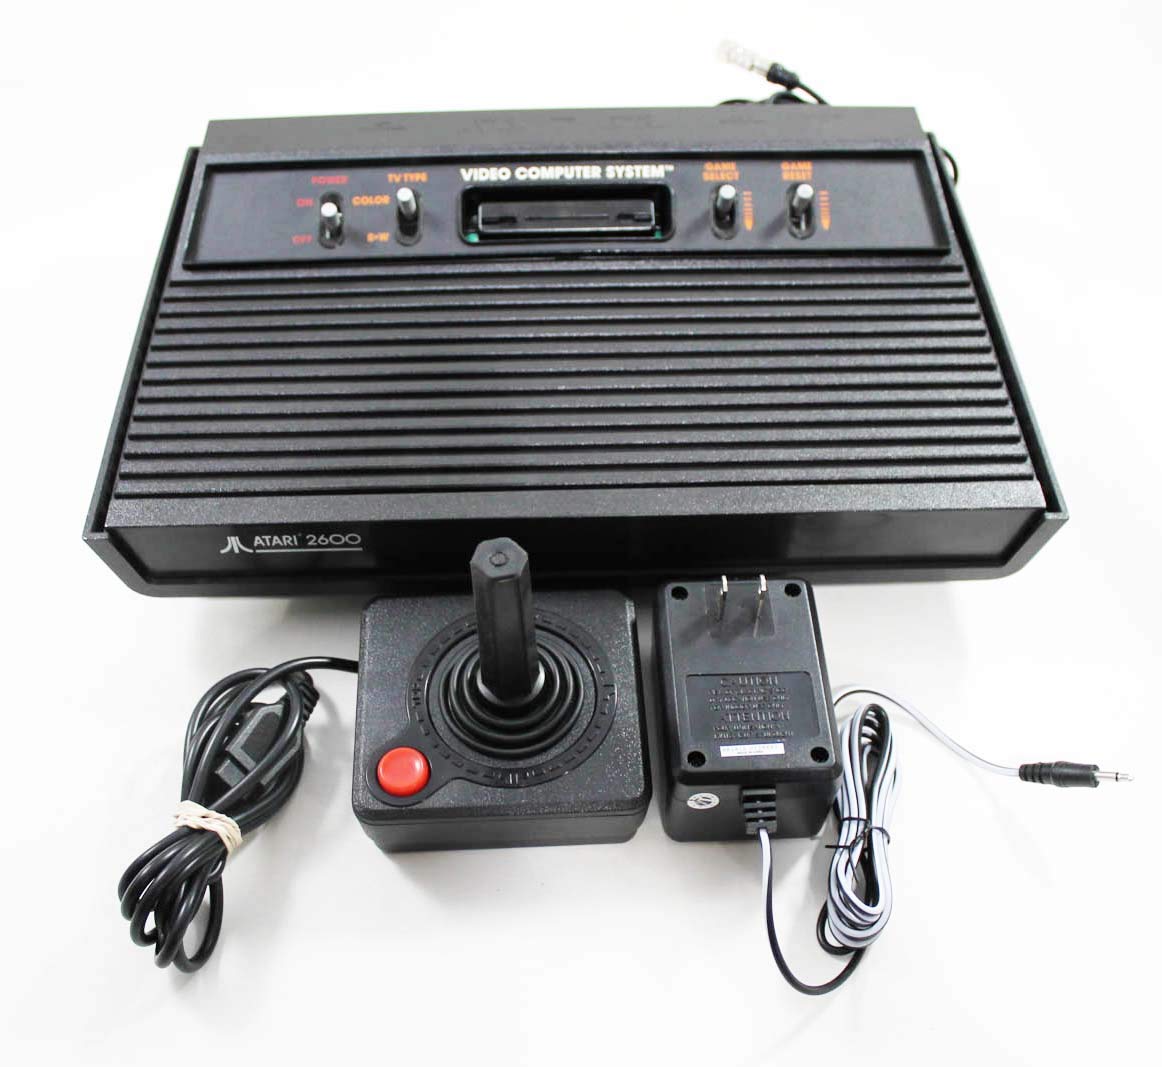 Atari 2600 